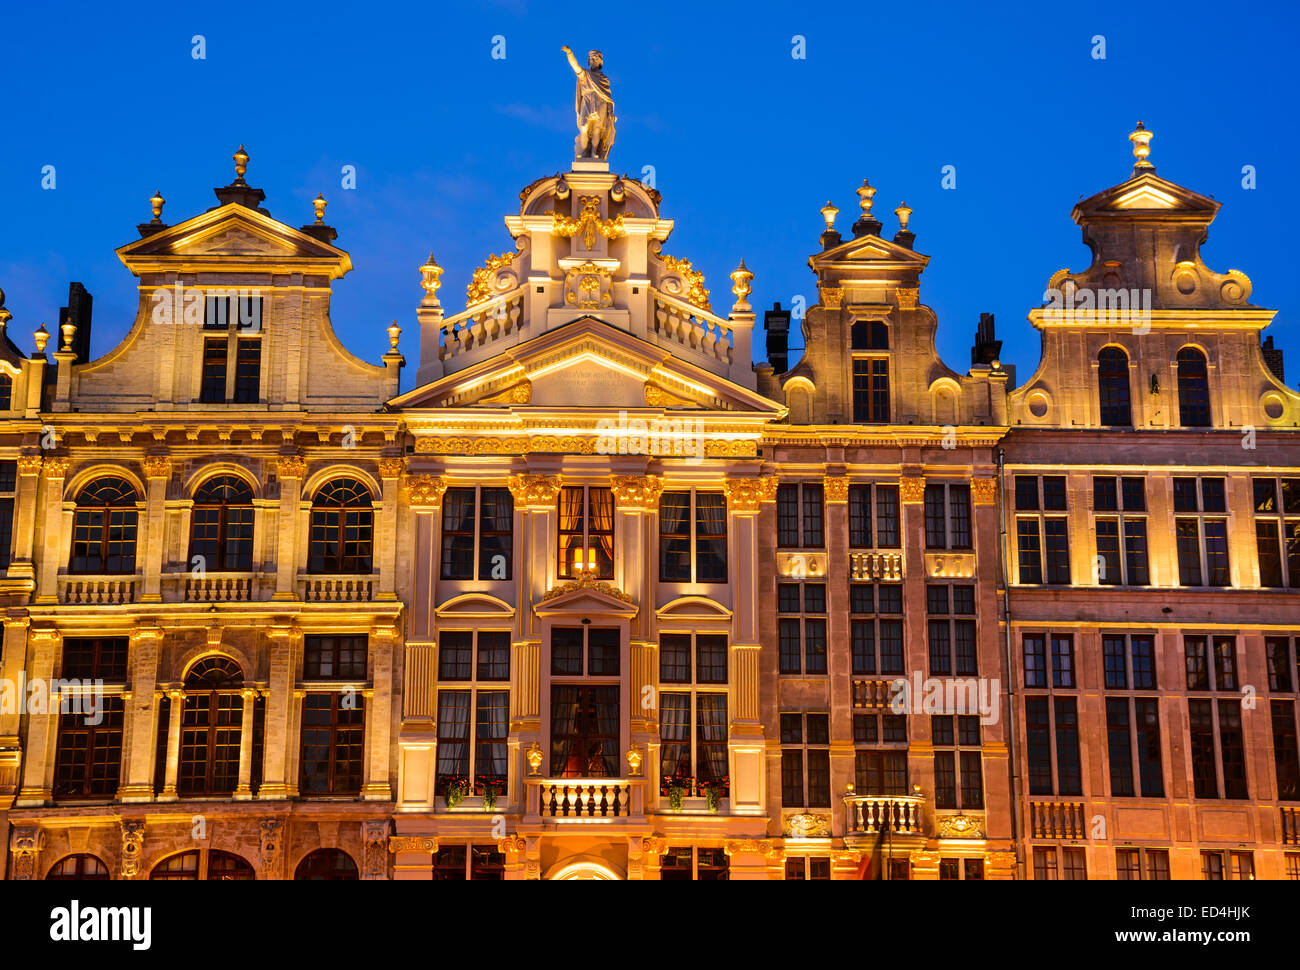 Bruxelles, Belgio. Immagine di notte con architettura medievale in Grand Place (Grote Markt). Foto Stock